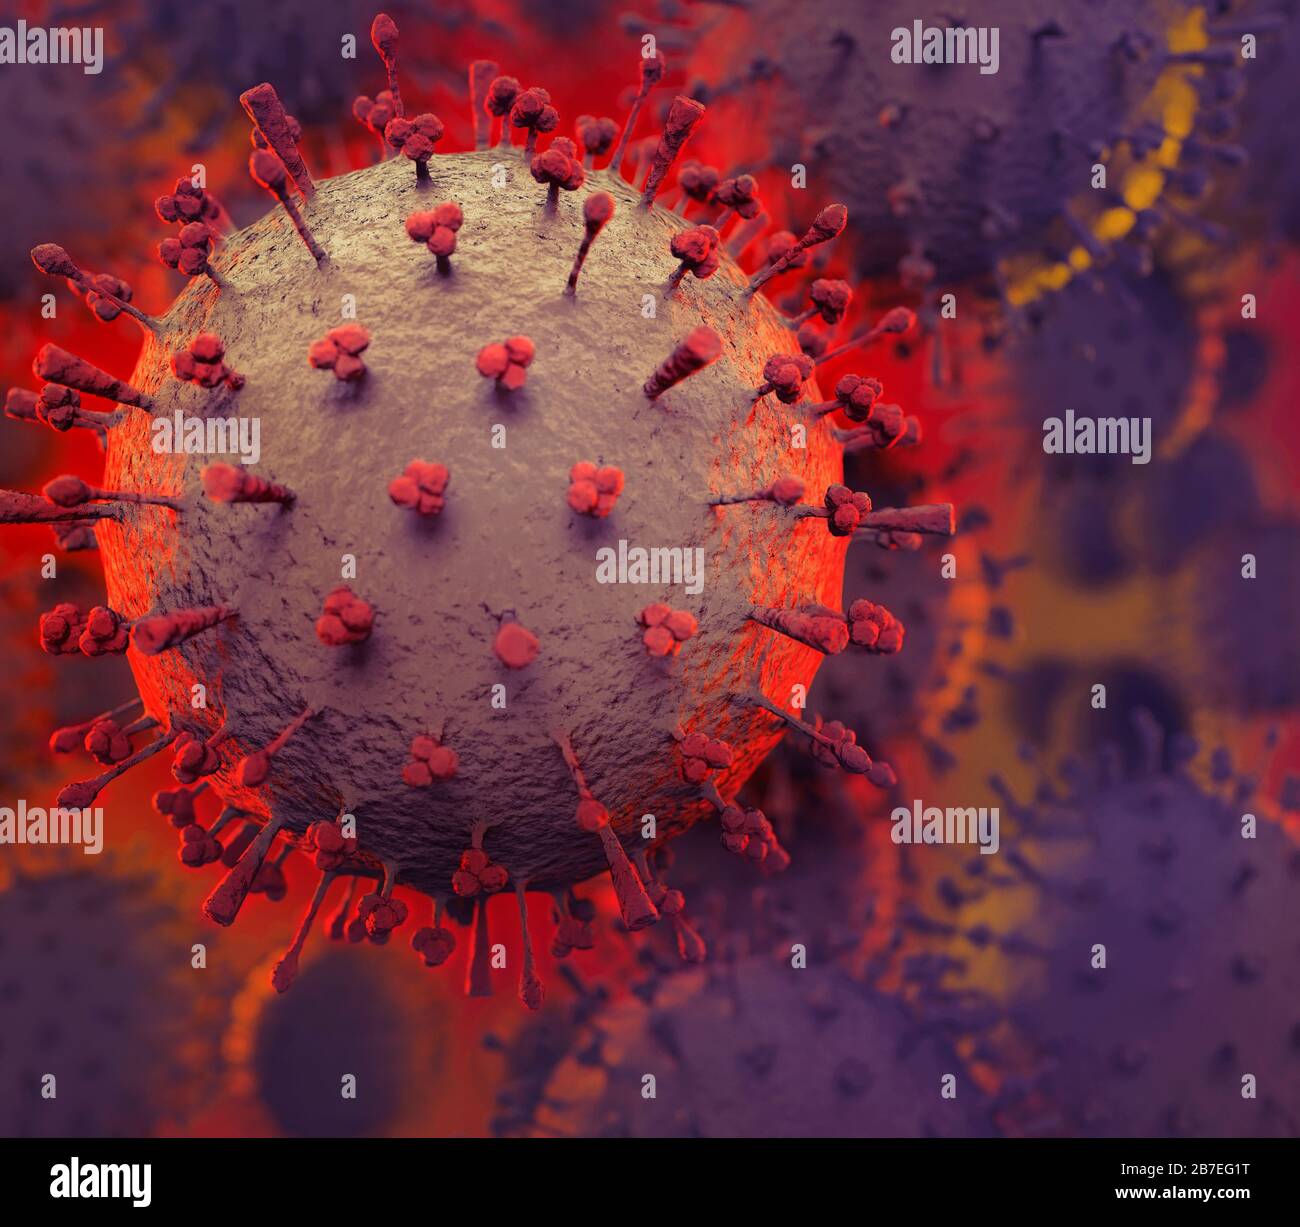 Coronavirus, COVID-19, künstlerische Darstellung. Corona Viruspartikel konzeptionelle 3D-Abbildung. Verbreitung von Viren, Epidemien und Pandemiekonzepten. Stockfoto